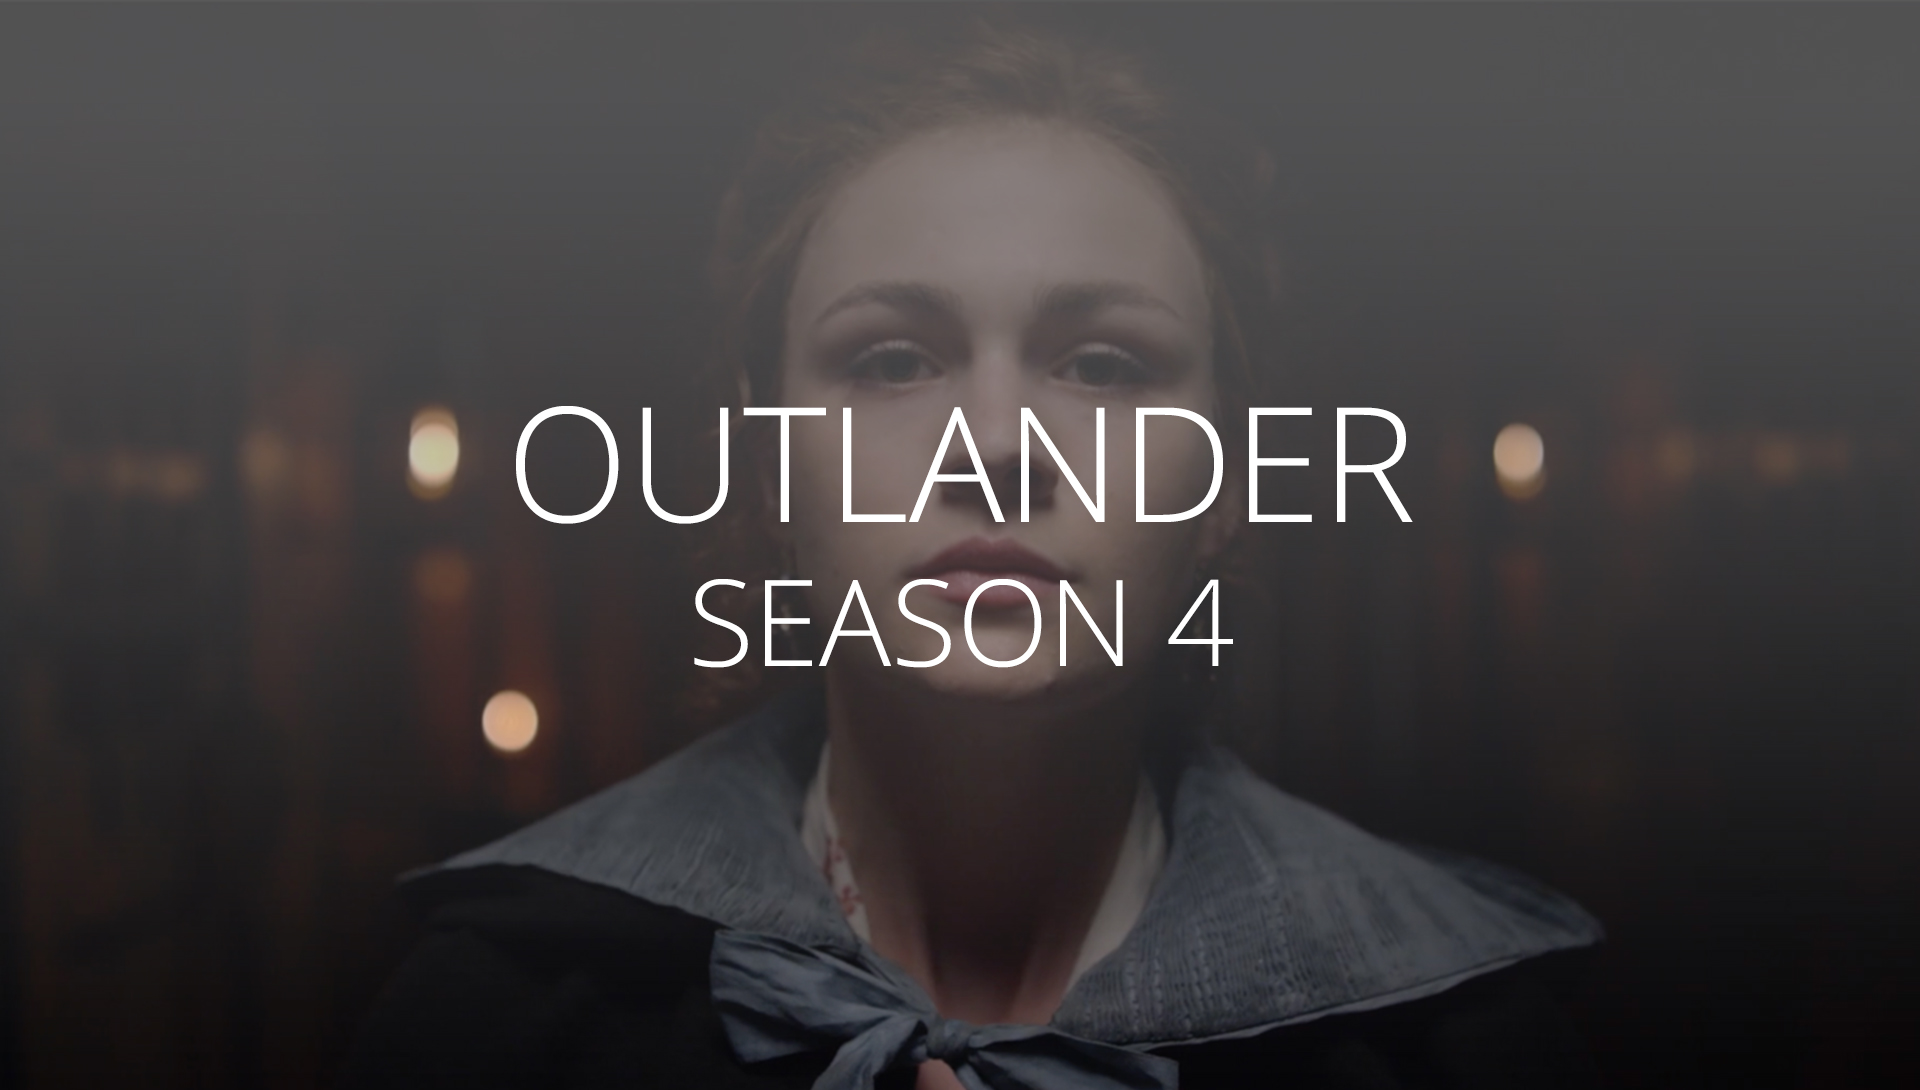 Thumbnail image Outlander season 4 trailer